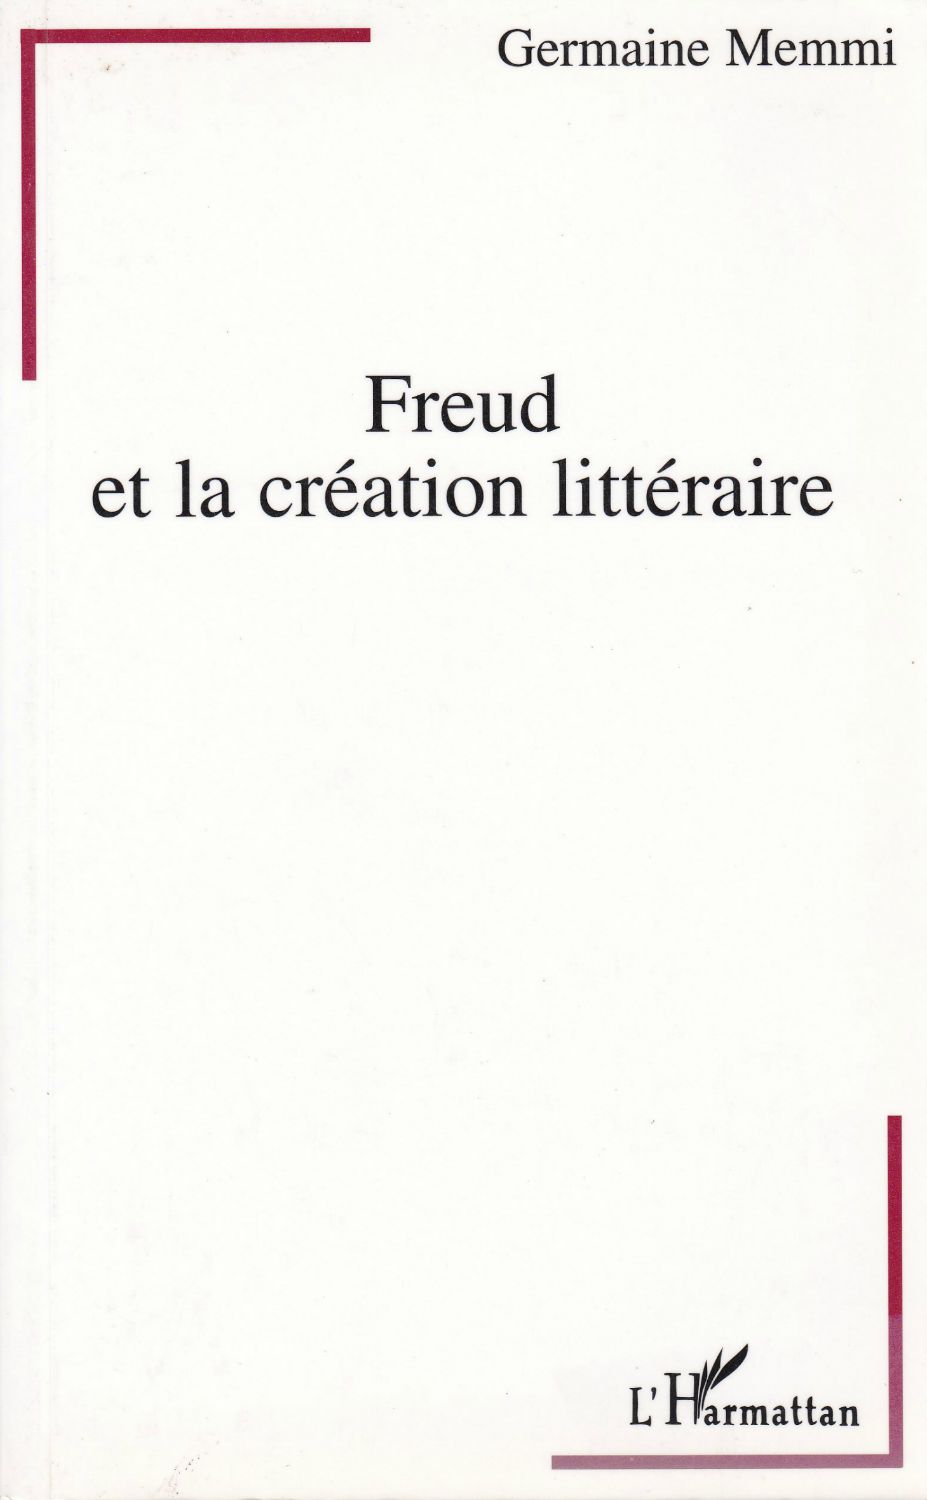 Freud et la creation litteraire.